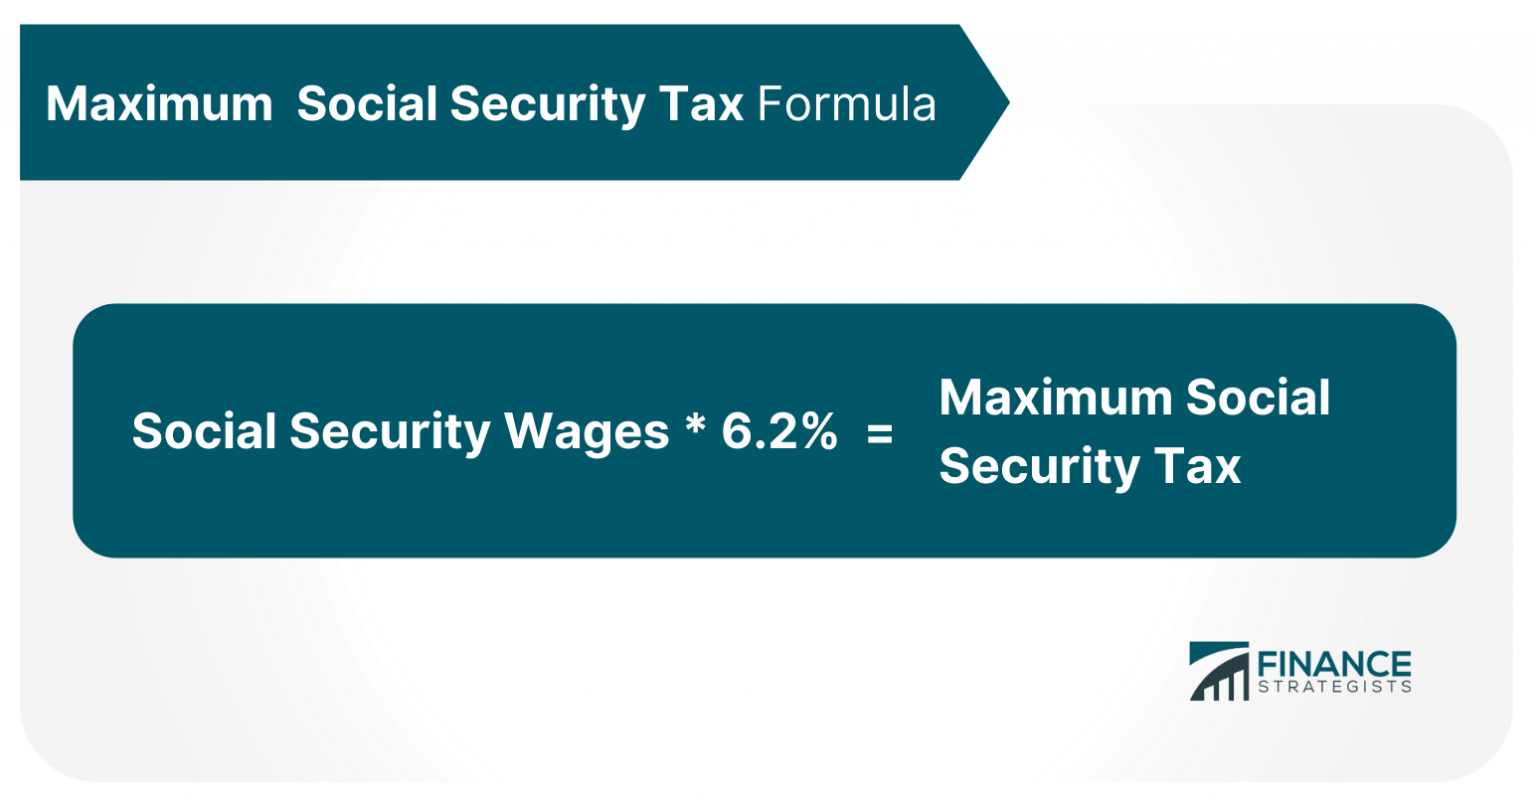 Maximum Social Security Tax in 2021